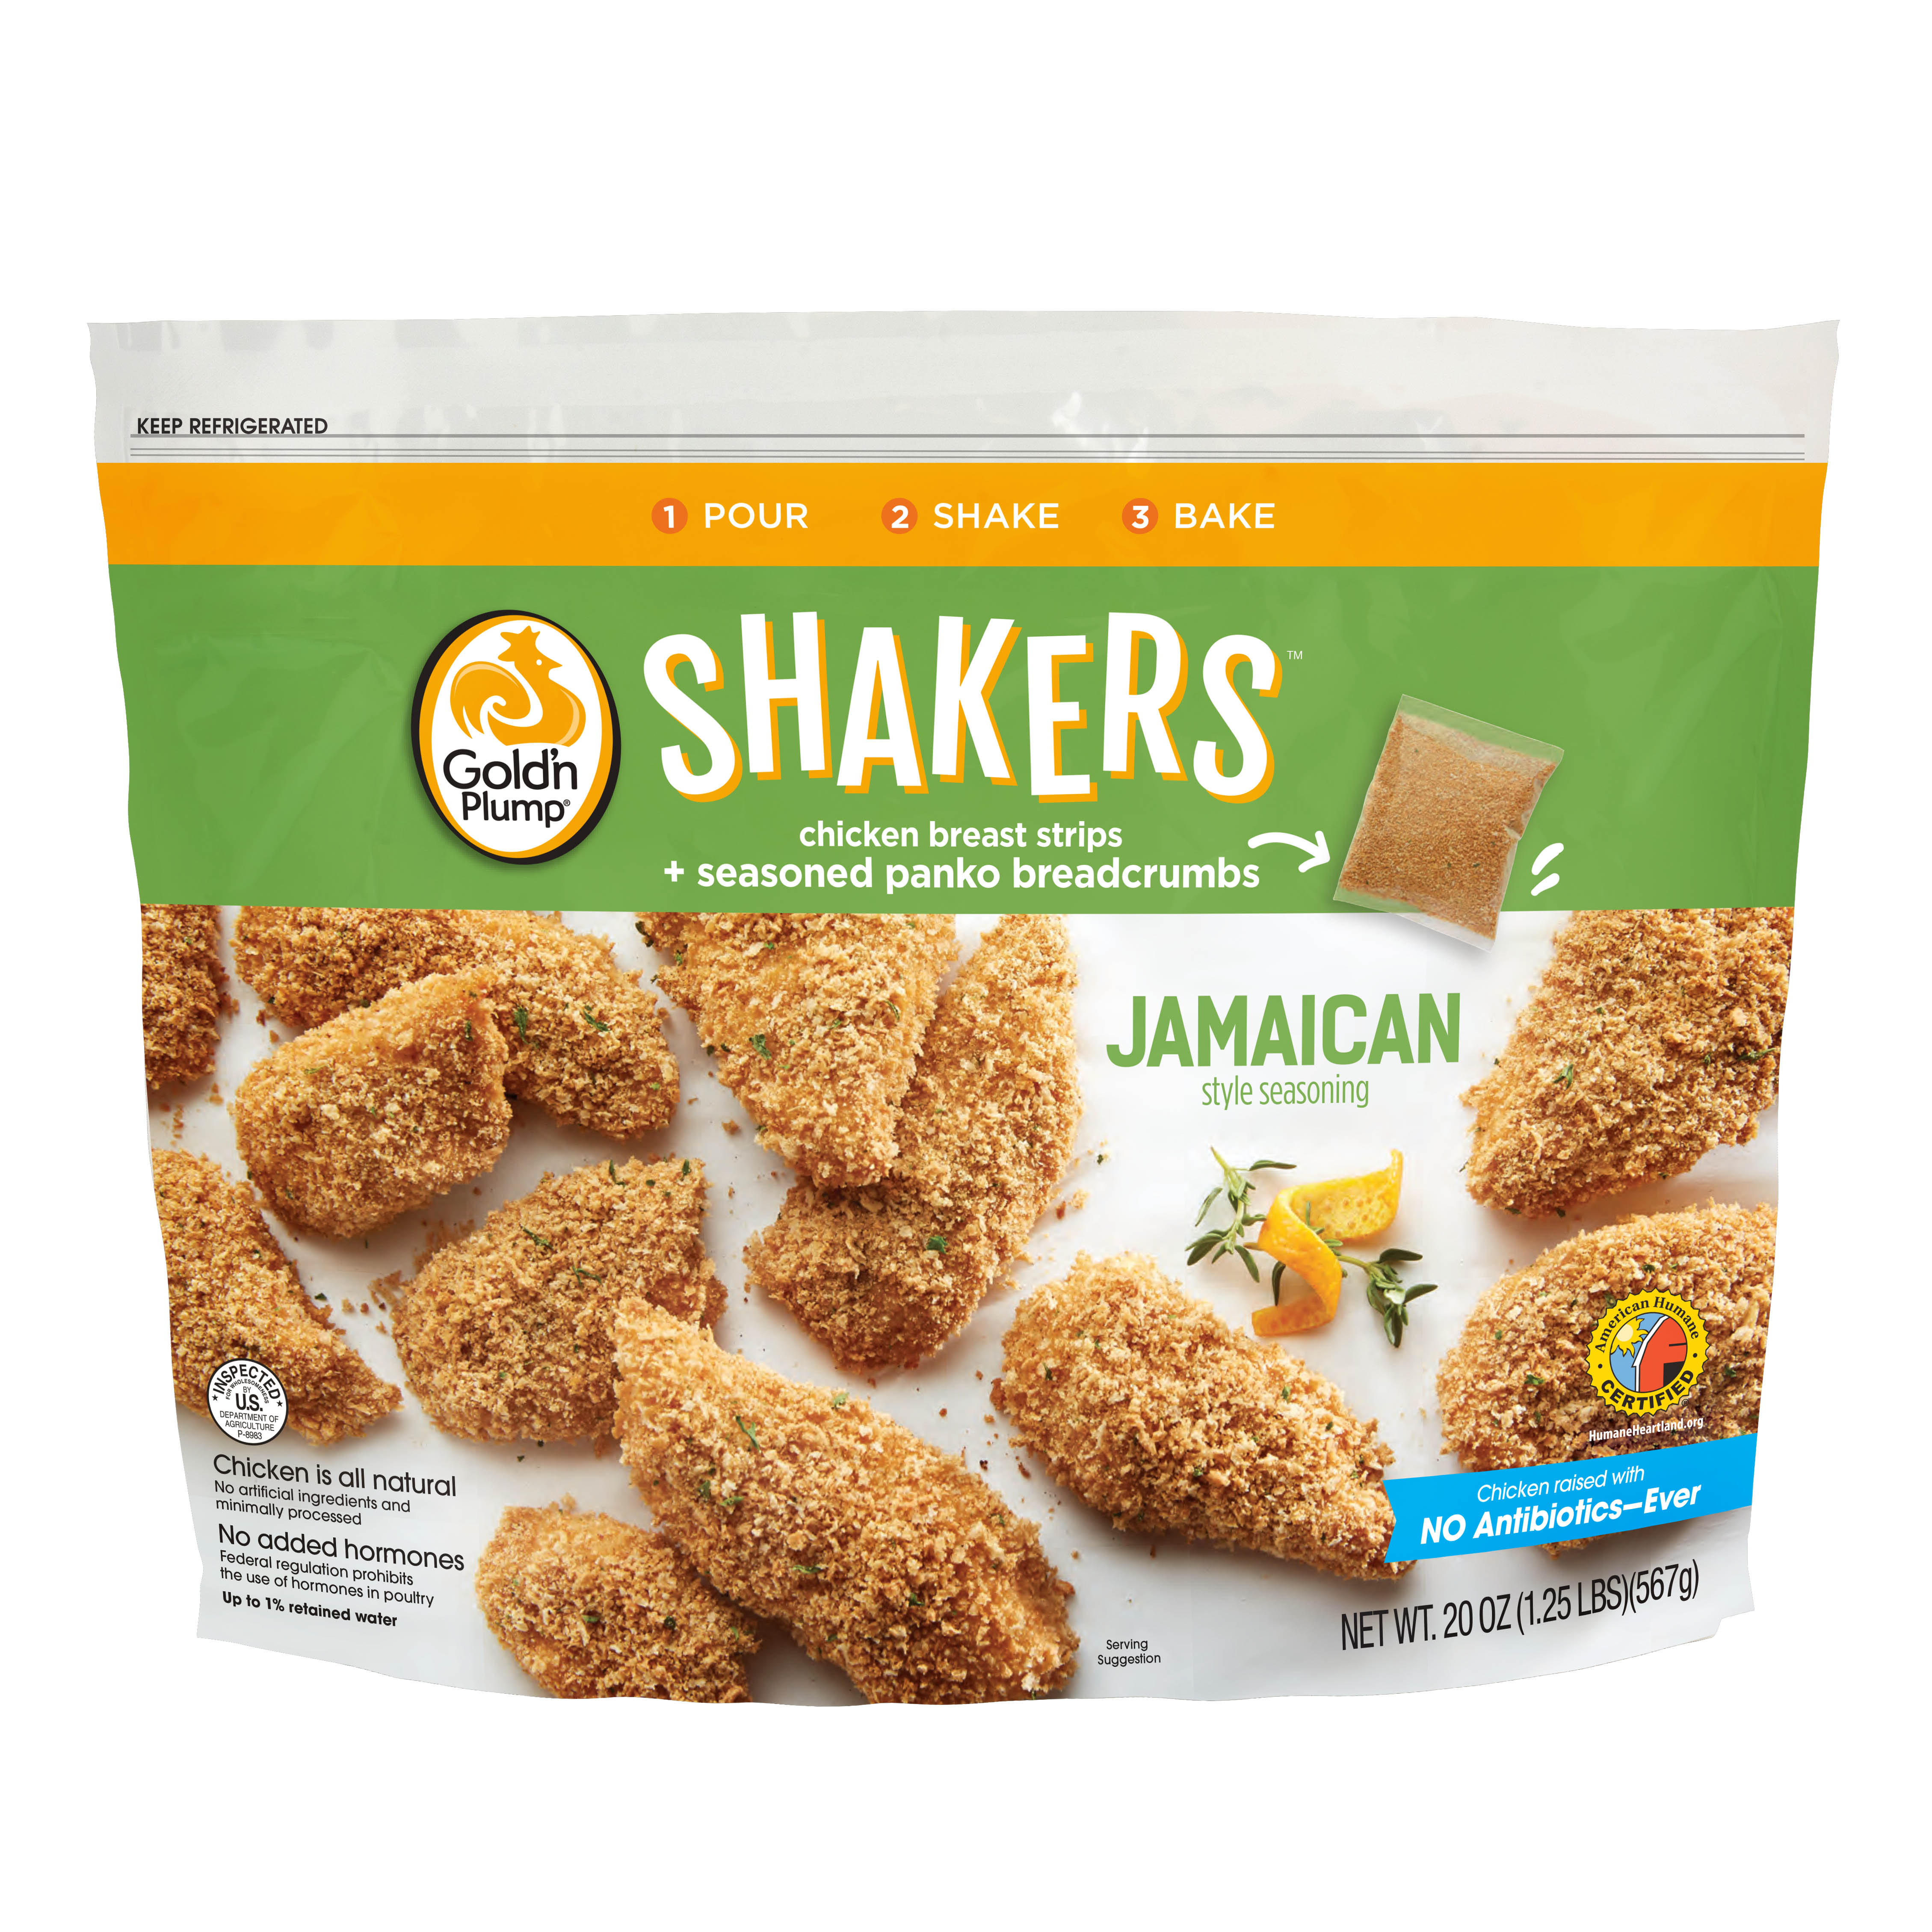 Jamaican Jerk Gold'n Plump Shakers